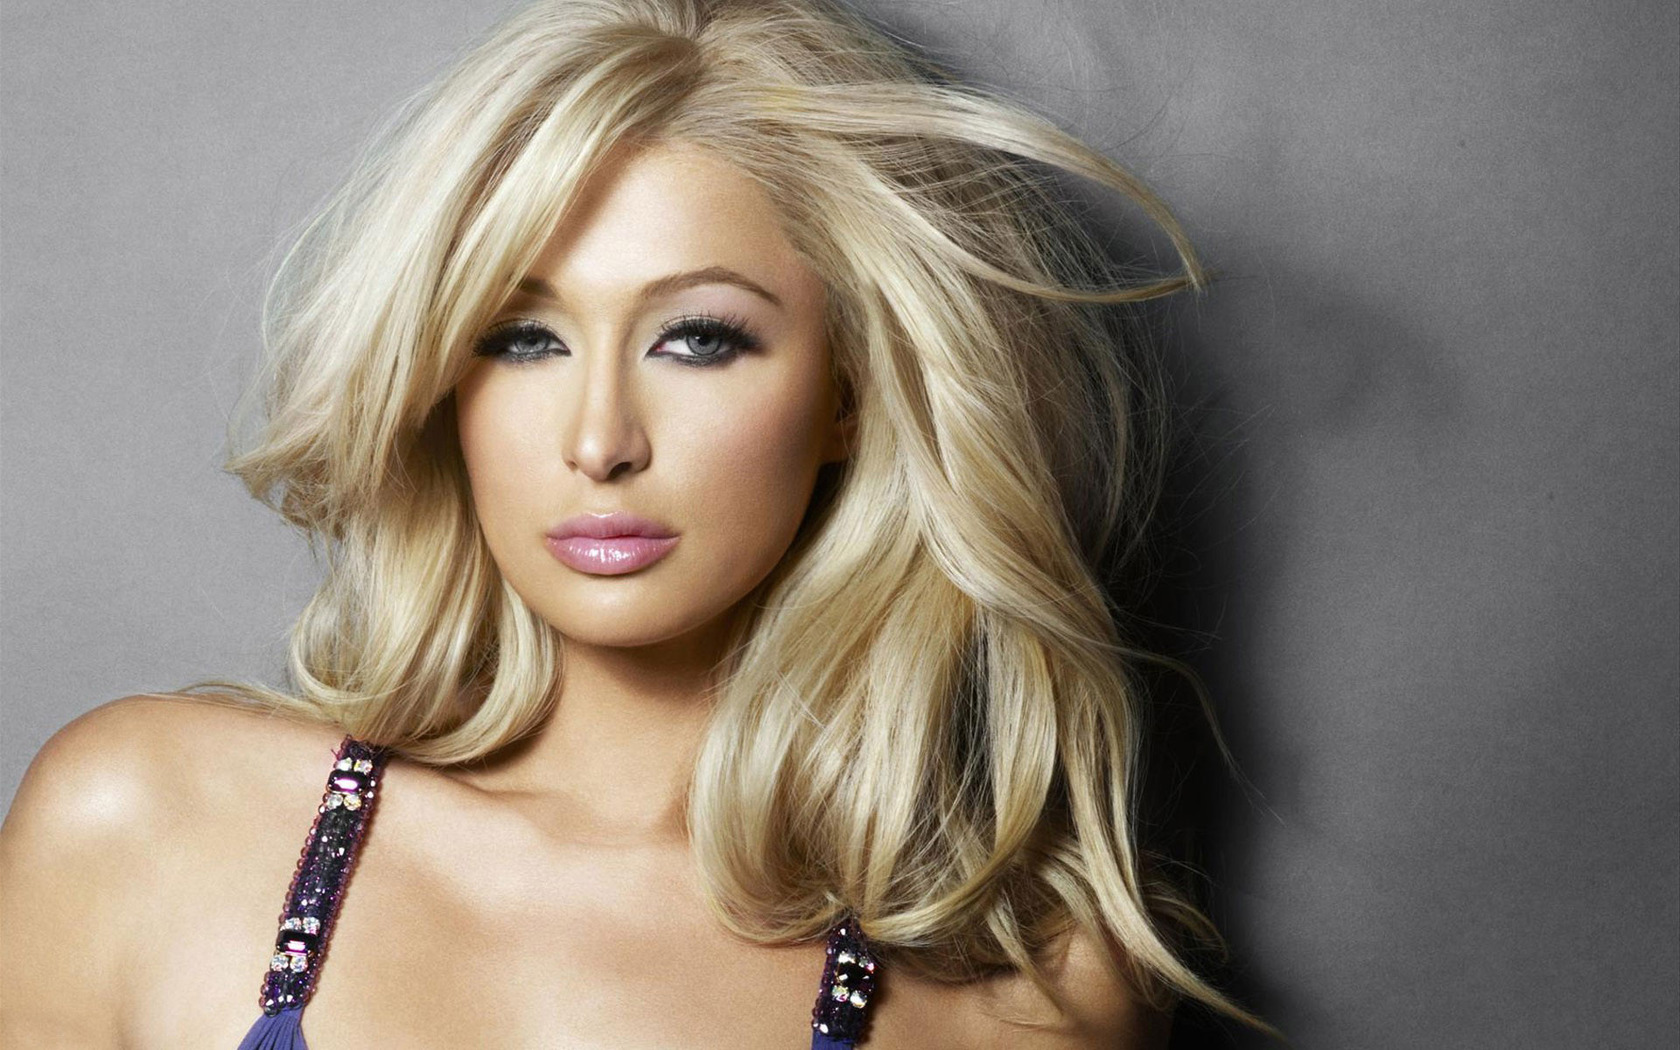 Paris Hilton intenta imitar a Kim Kardashian mostrando sus nalgas en la revista “Paper”